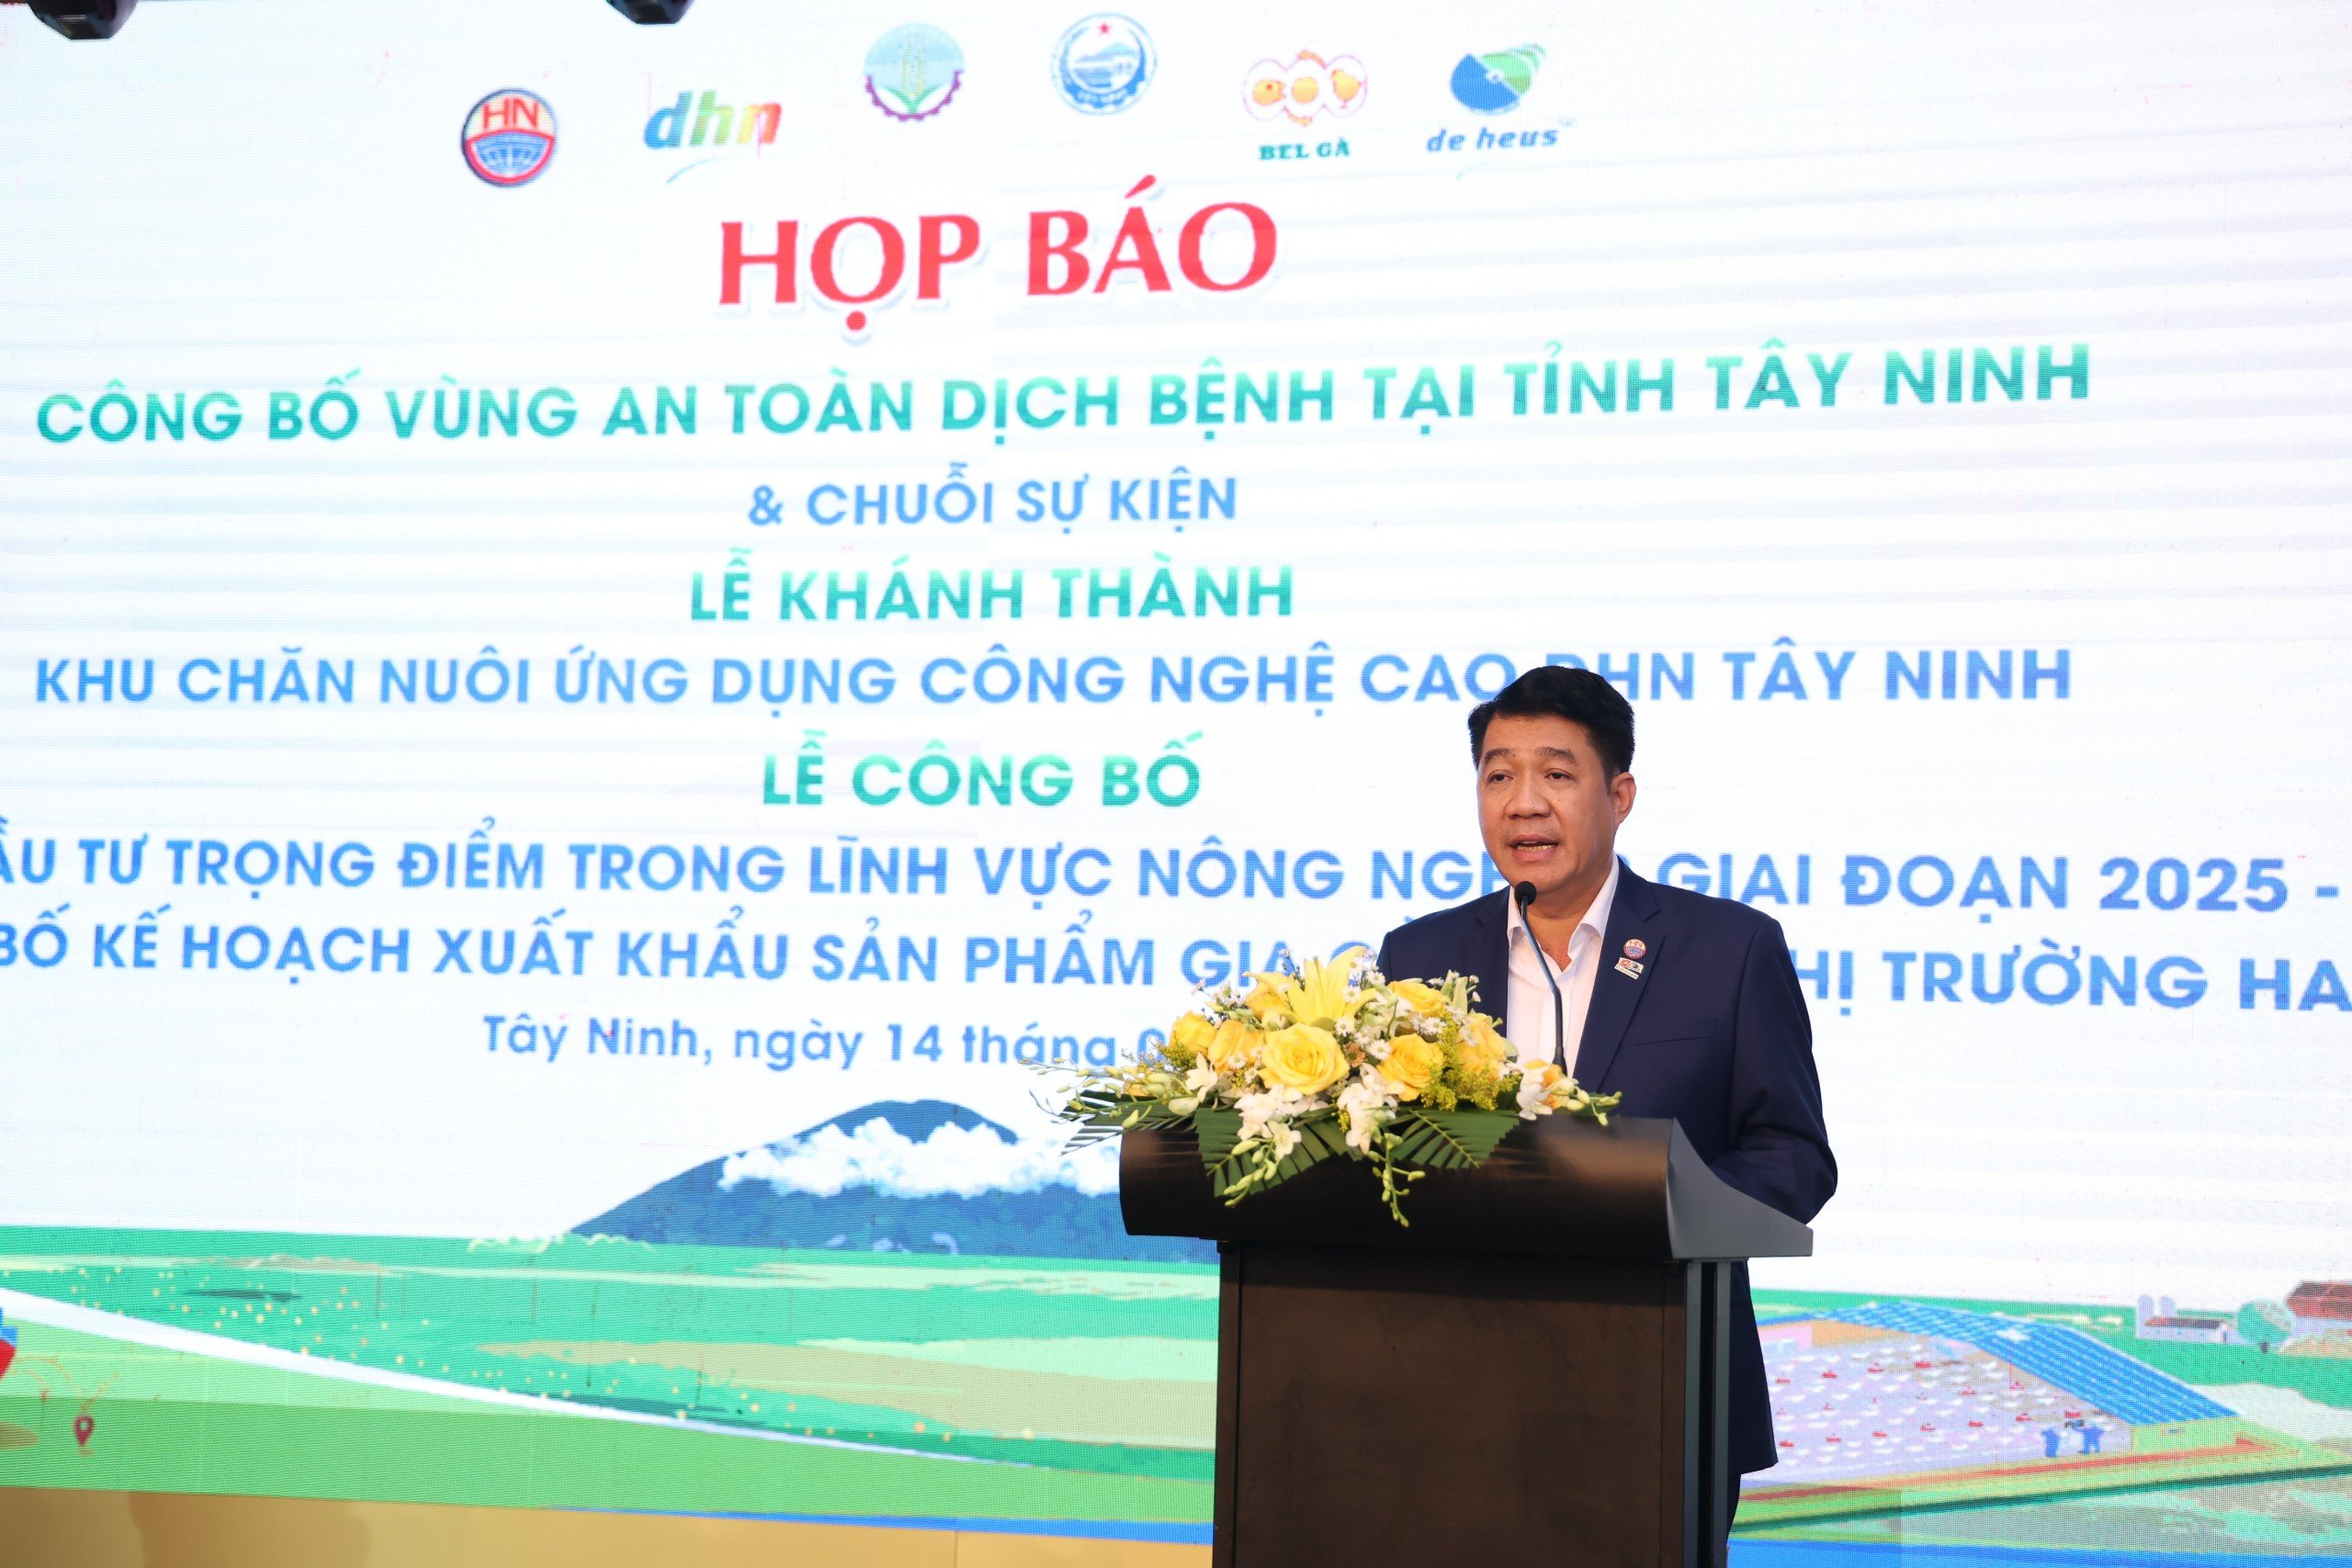 Tây Ninh chuẩn bị đón 1.000 khách dự chuỗi sự kiện lớn ngành nông nghiệp và công bố vùng an toàn dịch bệnh- Ảnh 5.